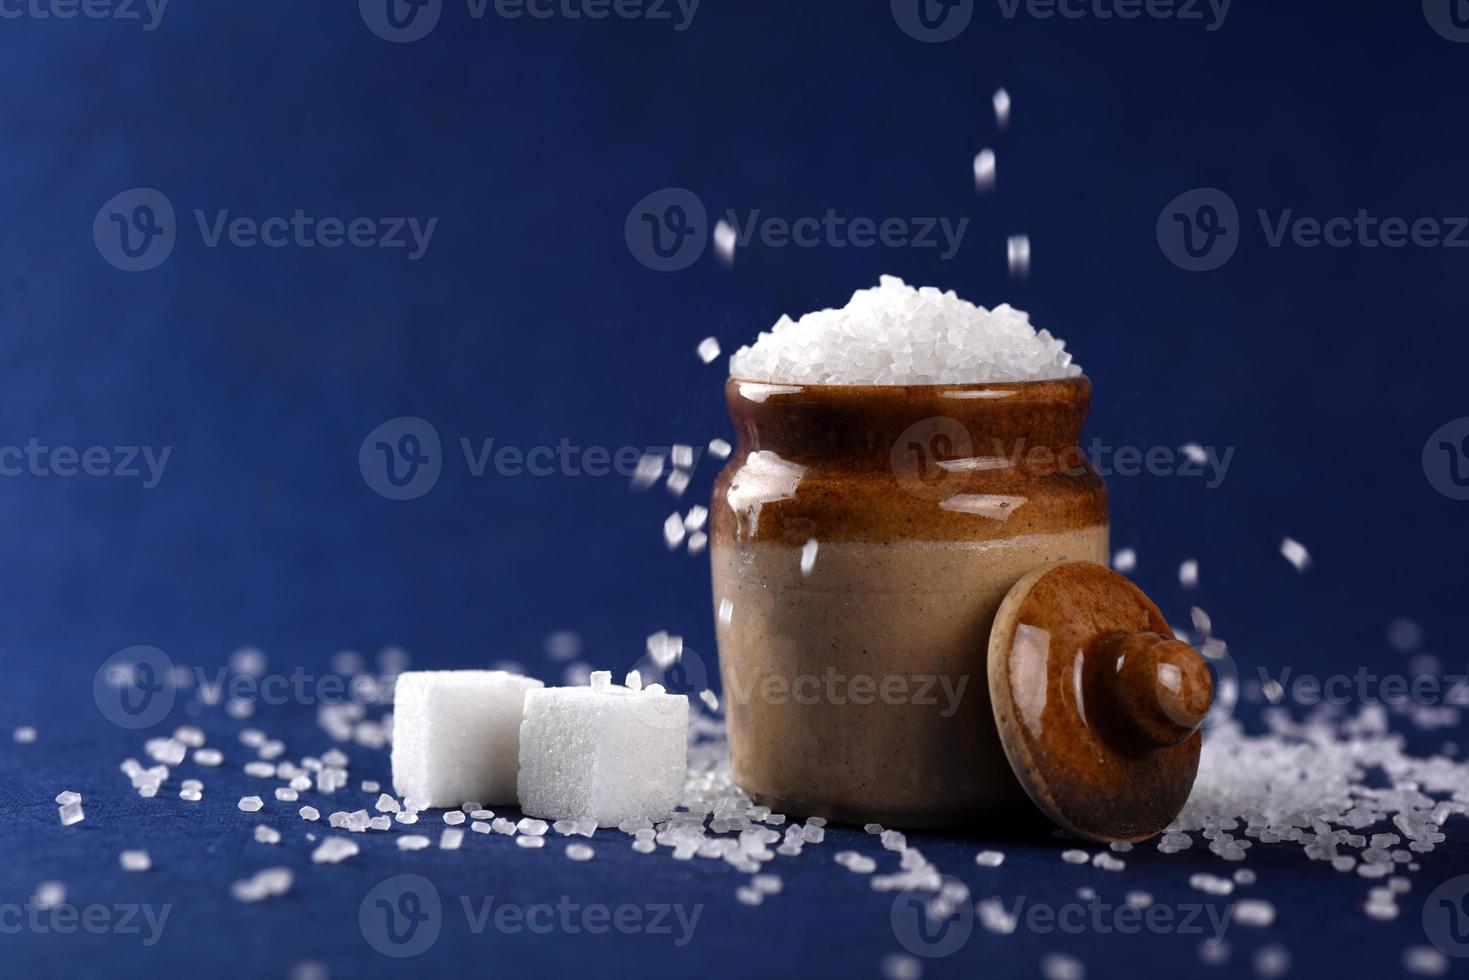 socker. vitt strösocker och raffinerat socker på en blå bakgrund foto